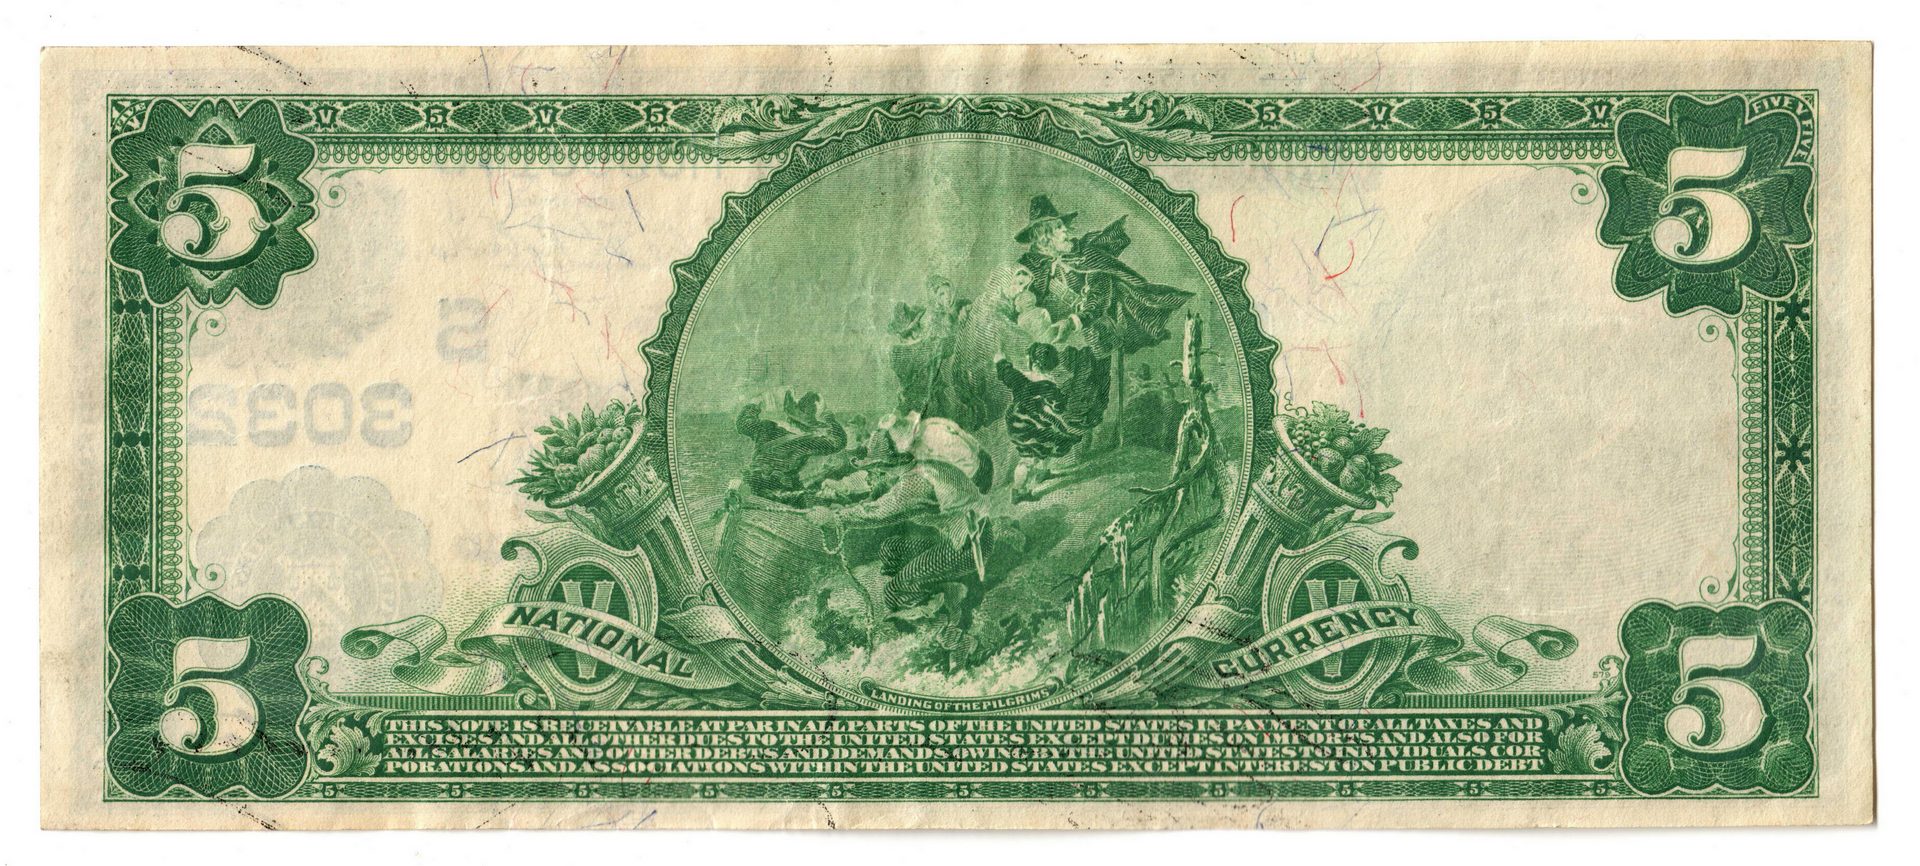 Lot 66: 1902 $5 American National Bank of Nashville Nation